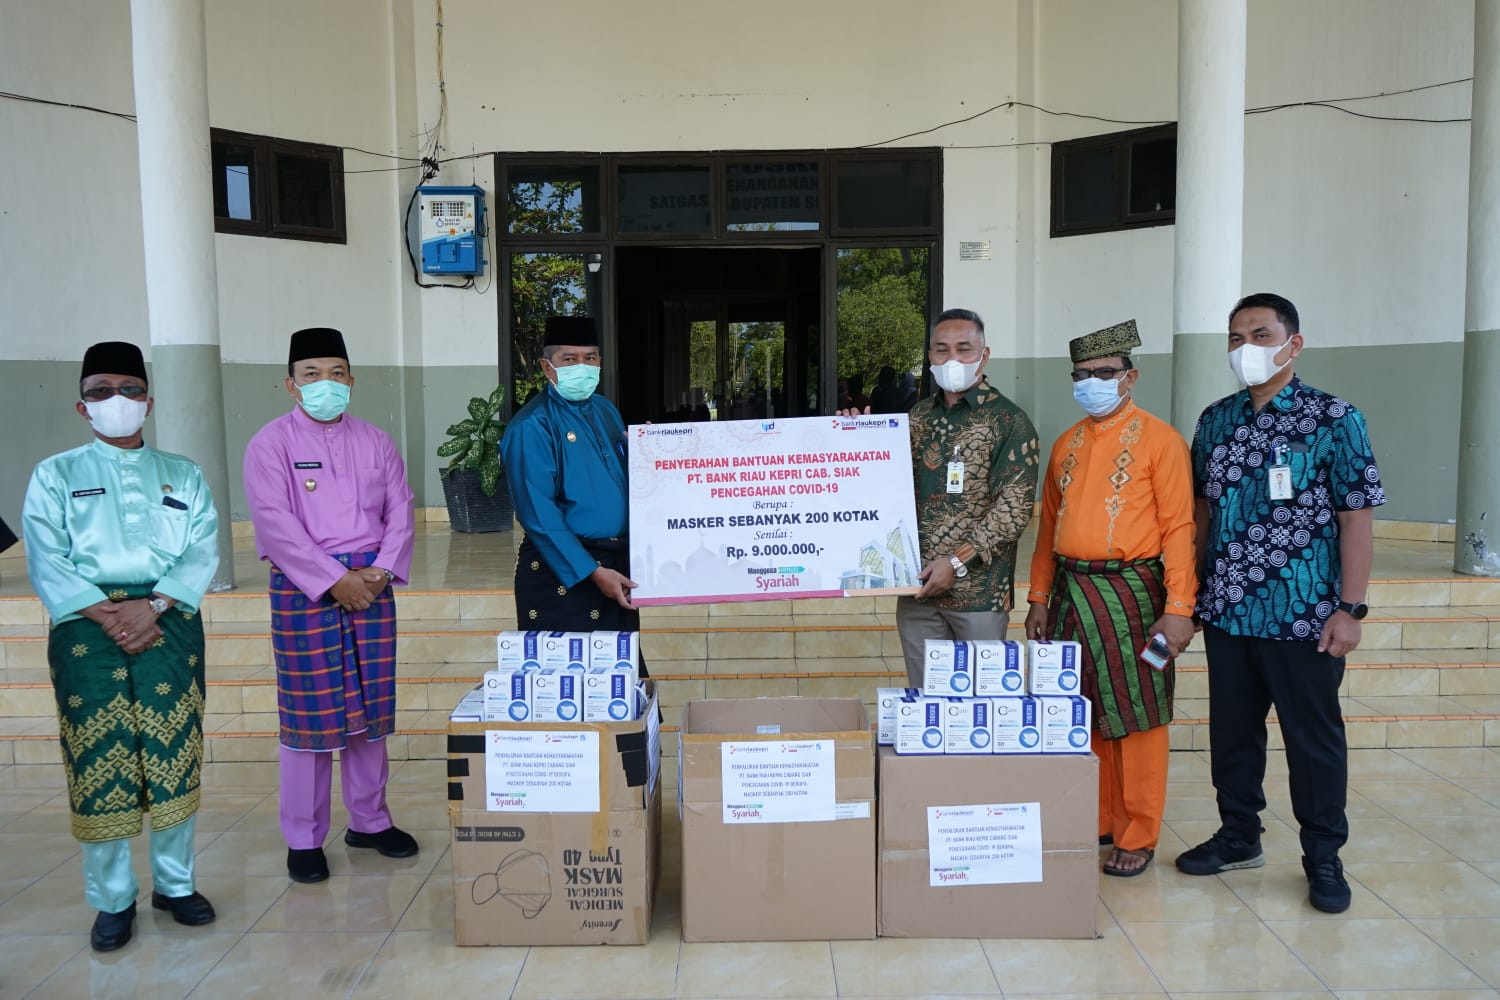 Cegah Migrasi  Covid-19 di Siak, BRK Cabang Siak Salurkan 200 Kotak  Masker